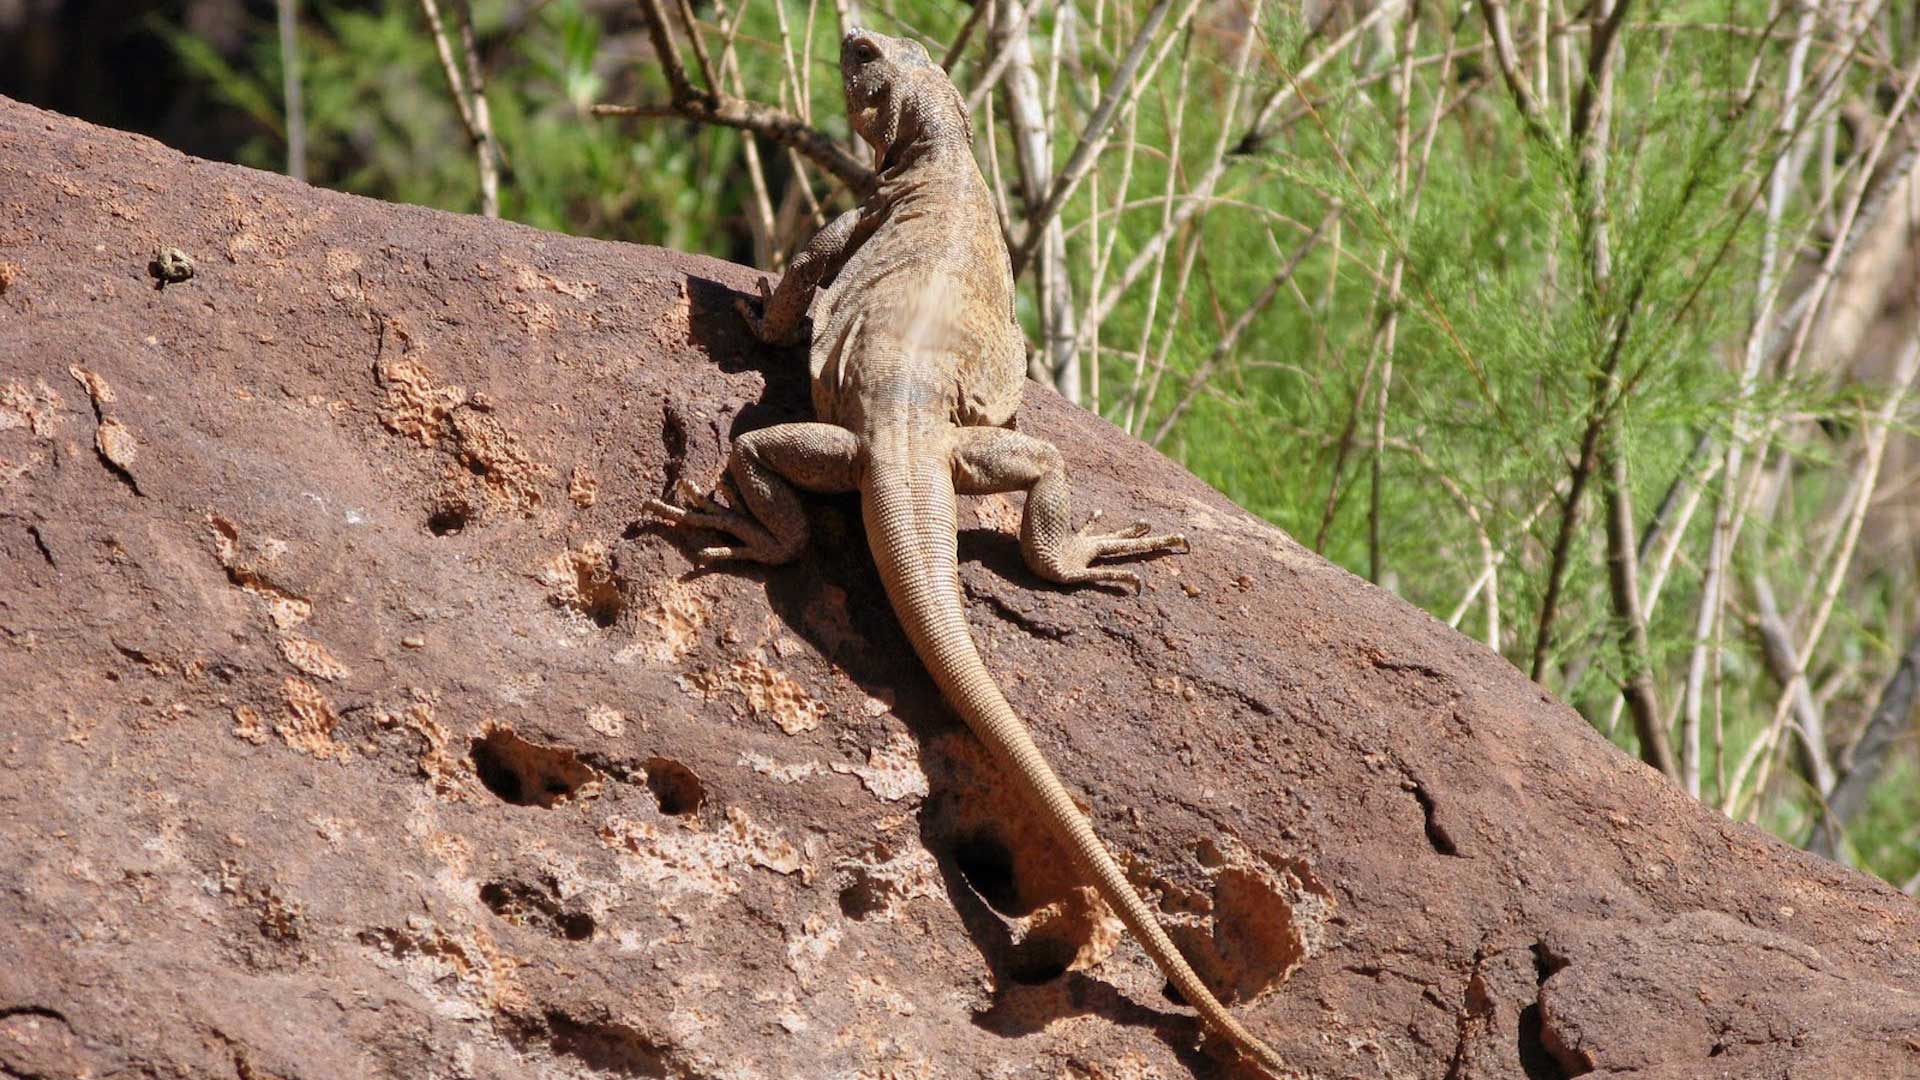 Chuckwalla lizard in Arizona